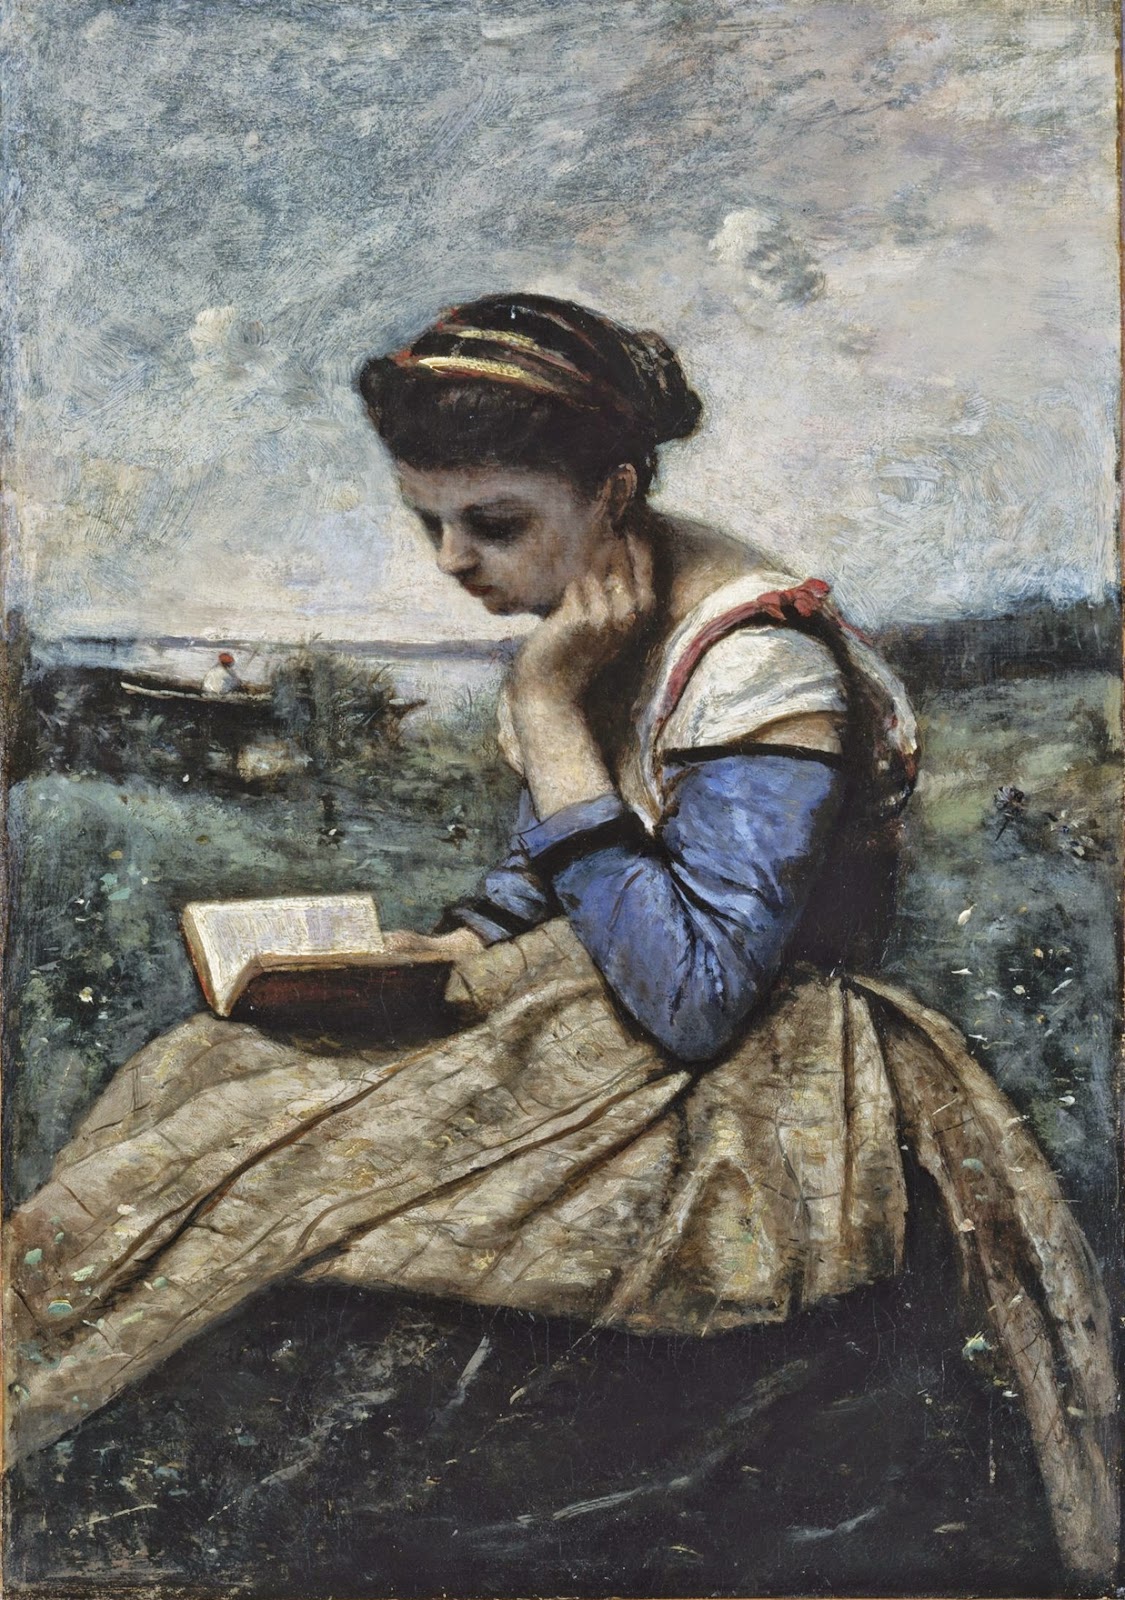 Camille+Corot (19).jpg